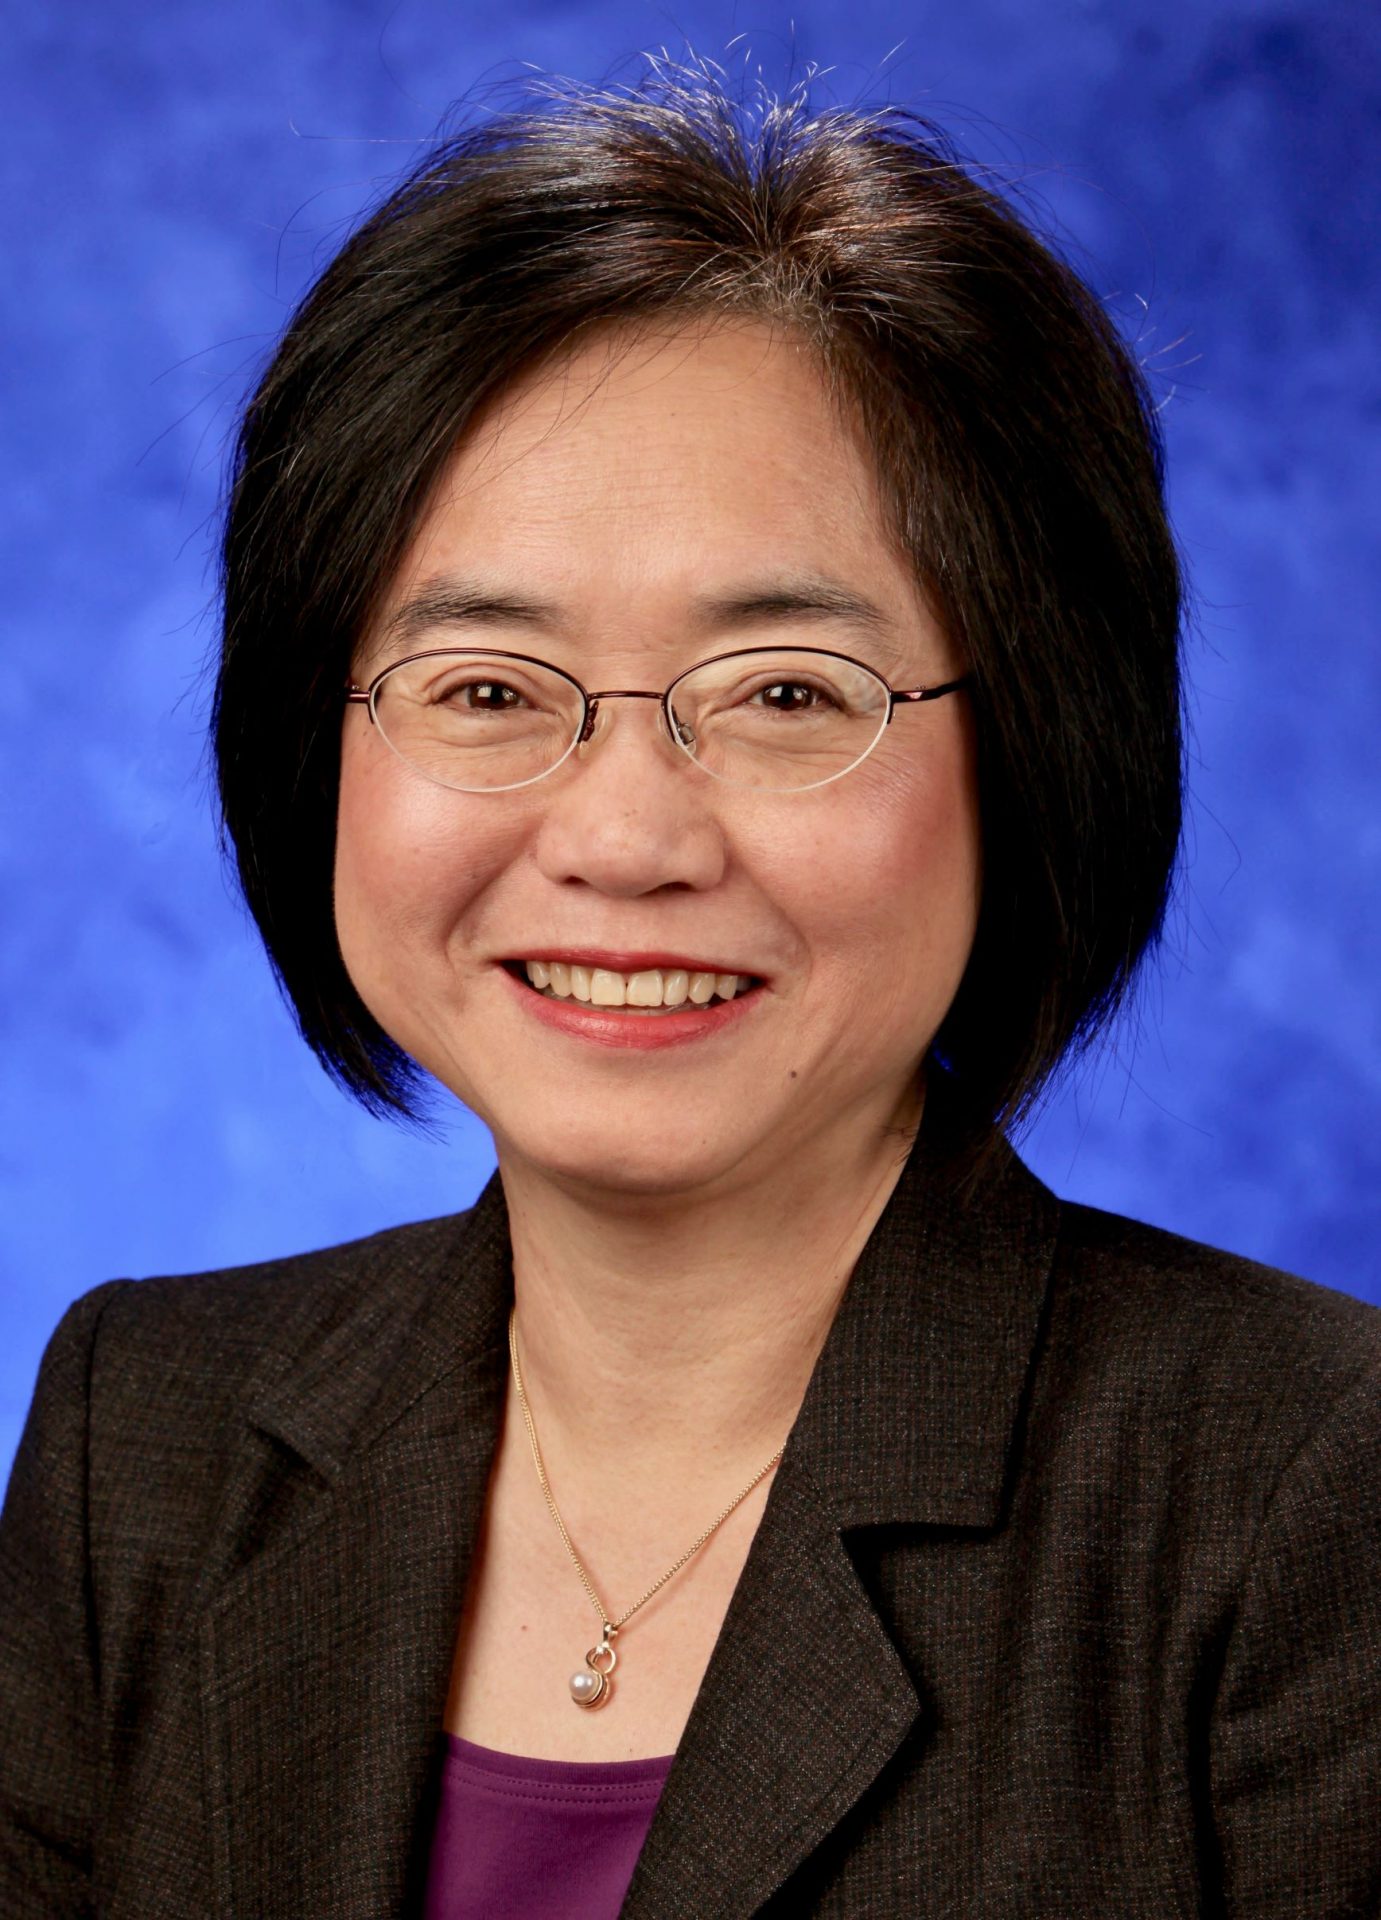 Dr. Shou Ling Leong